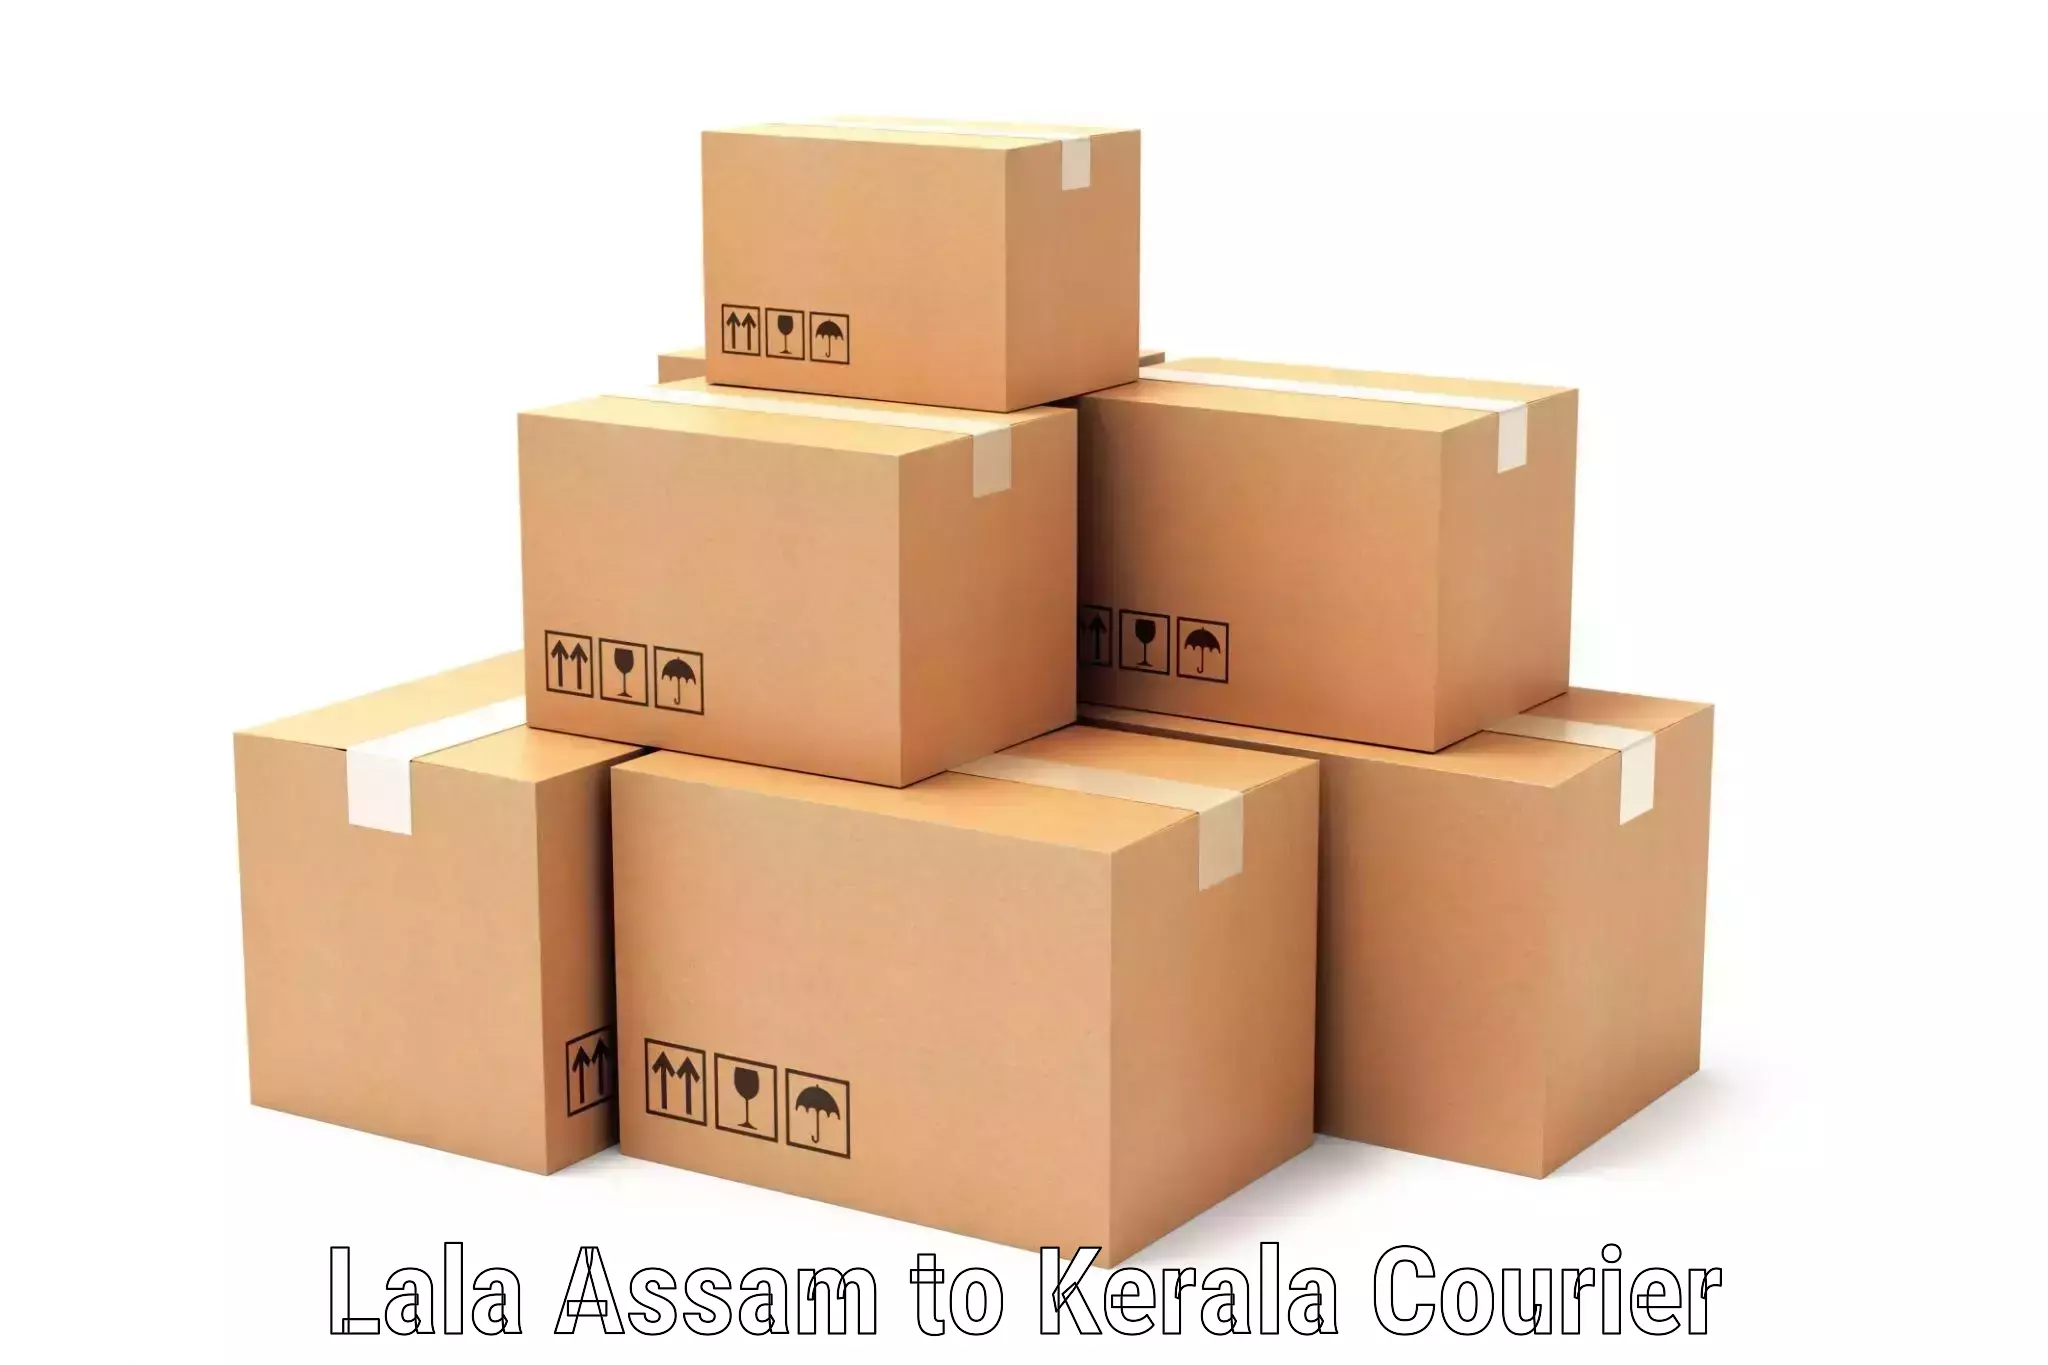 Express logistics providers Lala Assam to Kakkayam